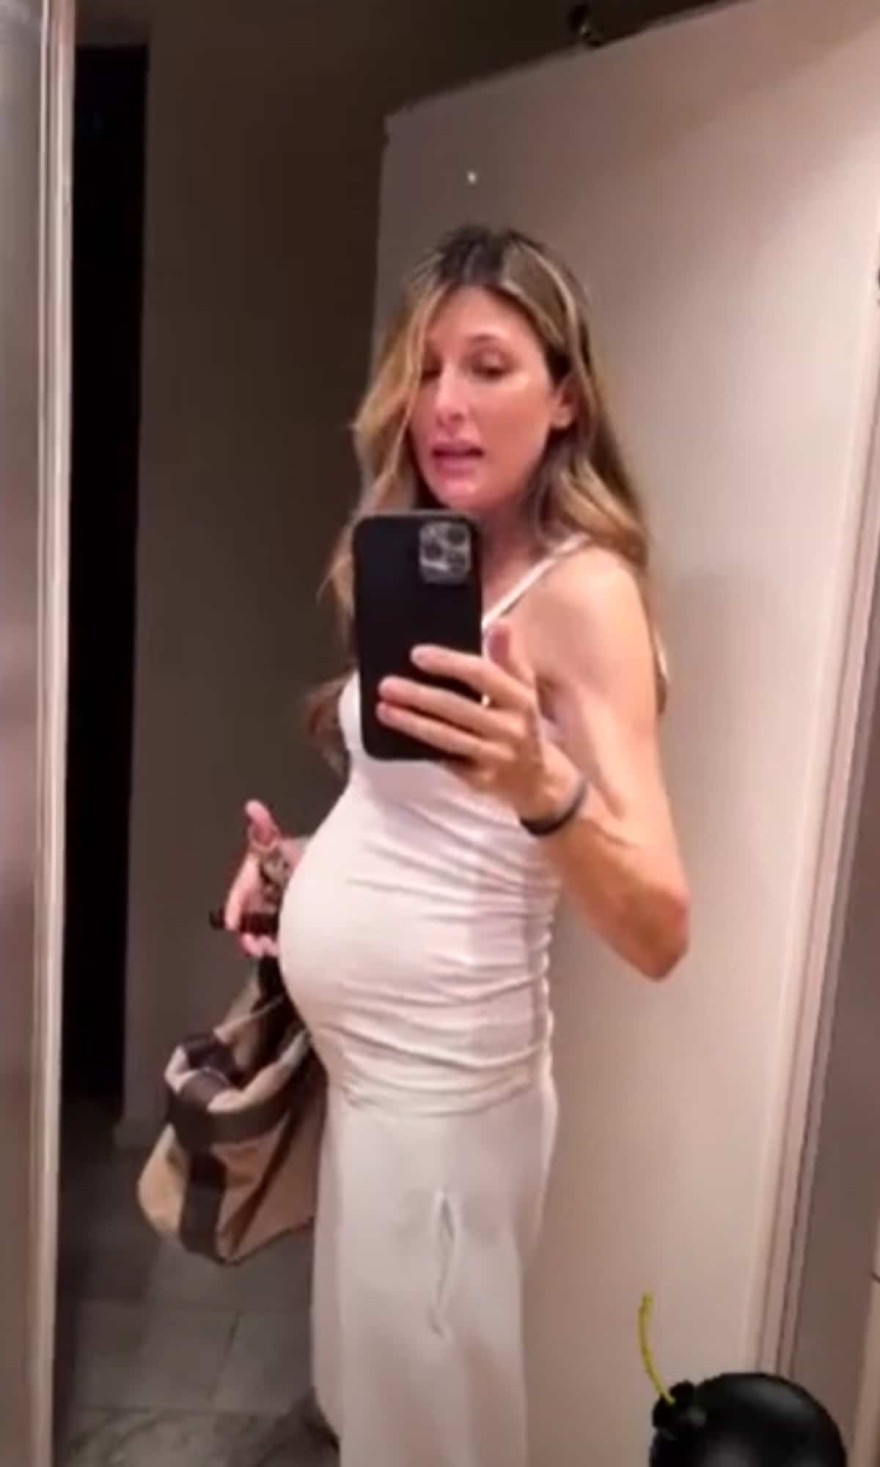 Τα νέα στιγμιότυπα της Ρούλας Σταματοπούλου στον 7ο μήνα της εγκυμοσύνης της 